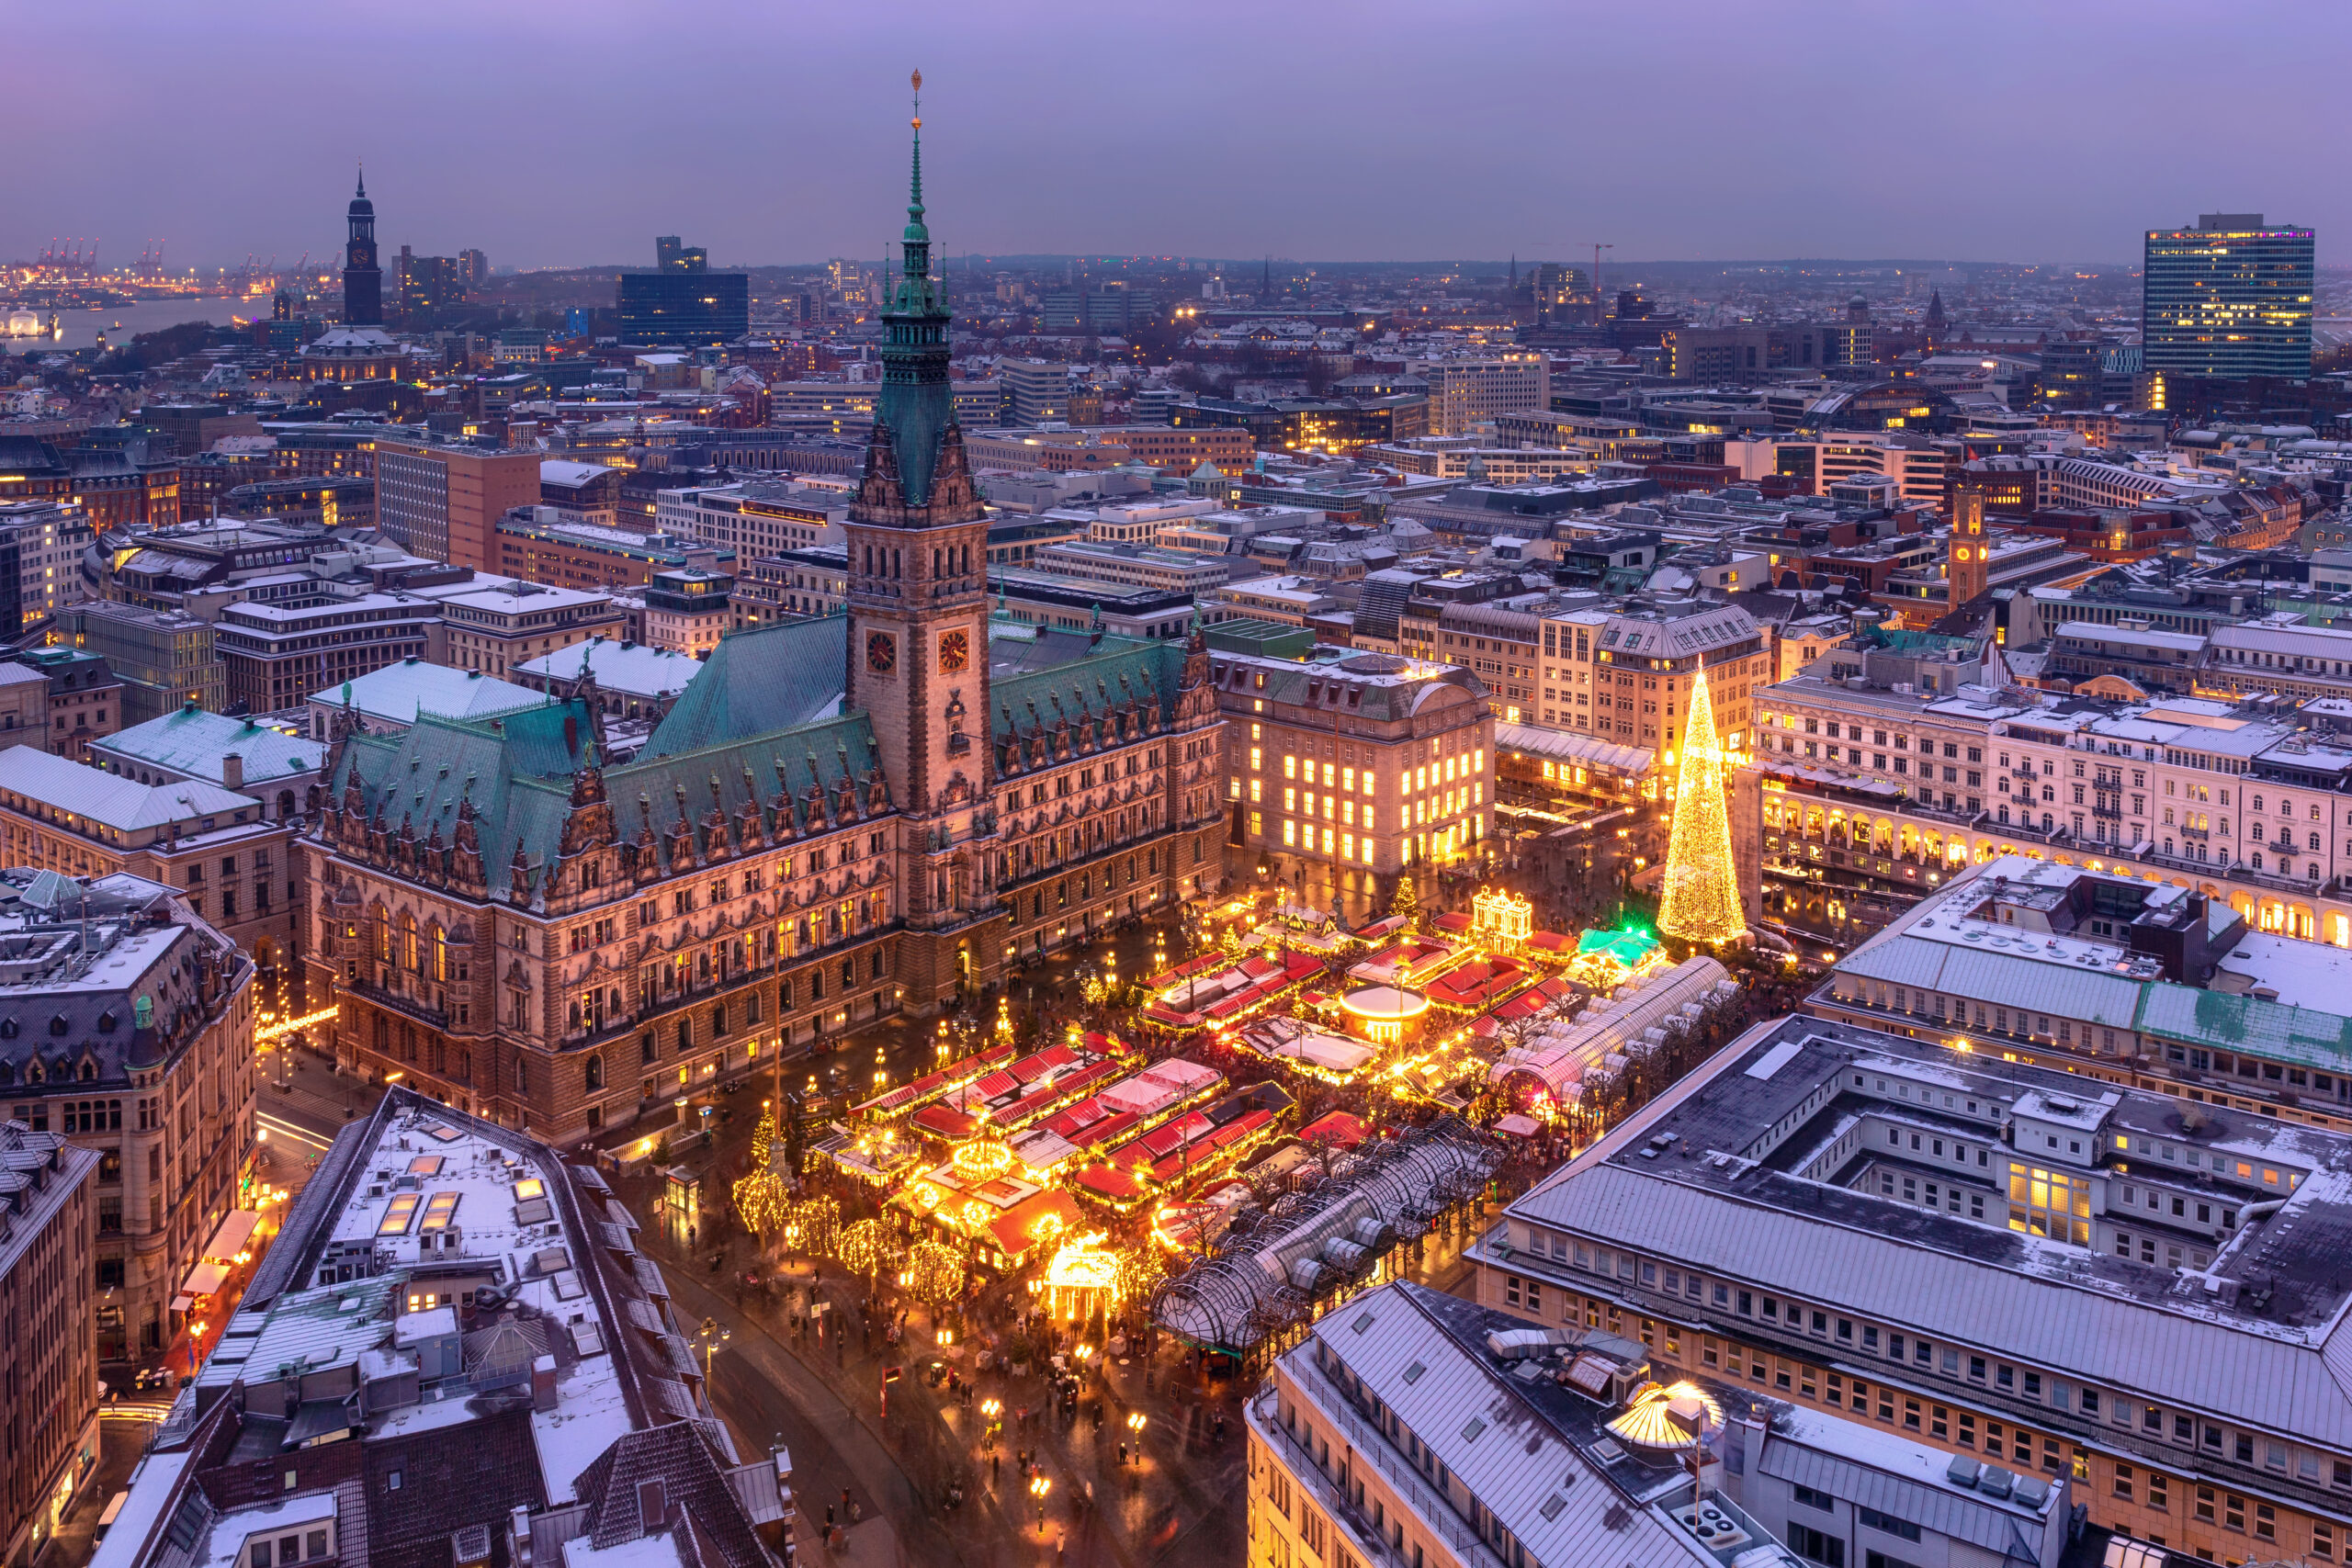 Wohl der bekannteste in Hamburg: Der Weihnachtsmarkt auf dem Rathausplatz